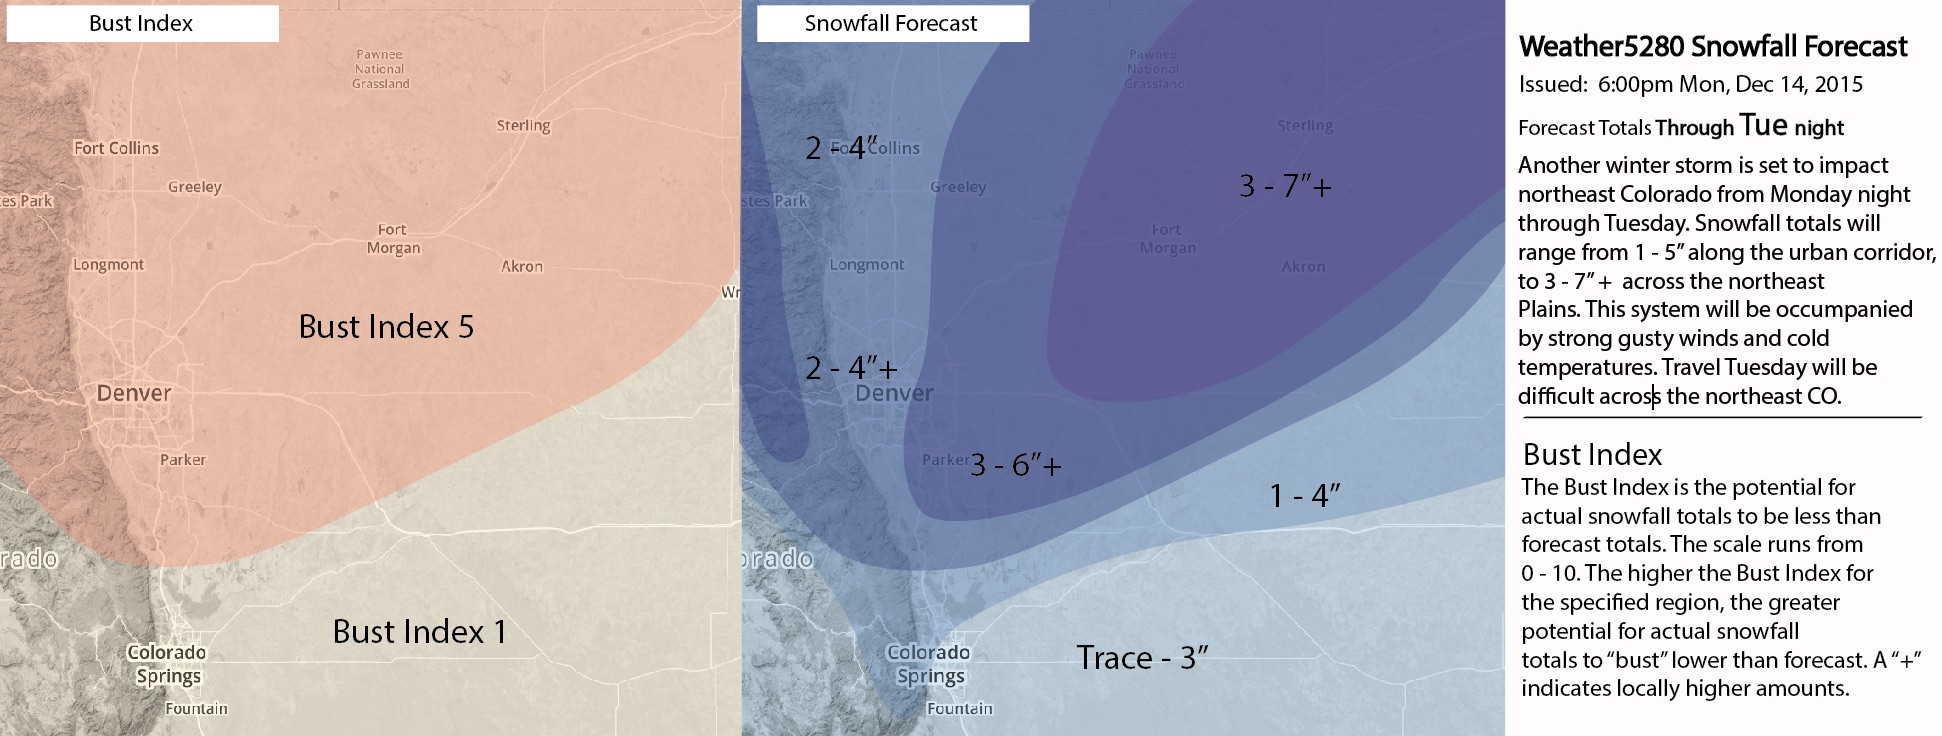 Weathe5280 snowfall forecast for Denver, northeast Colorado